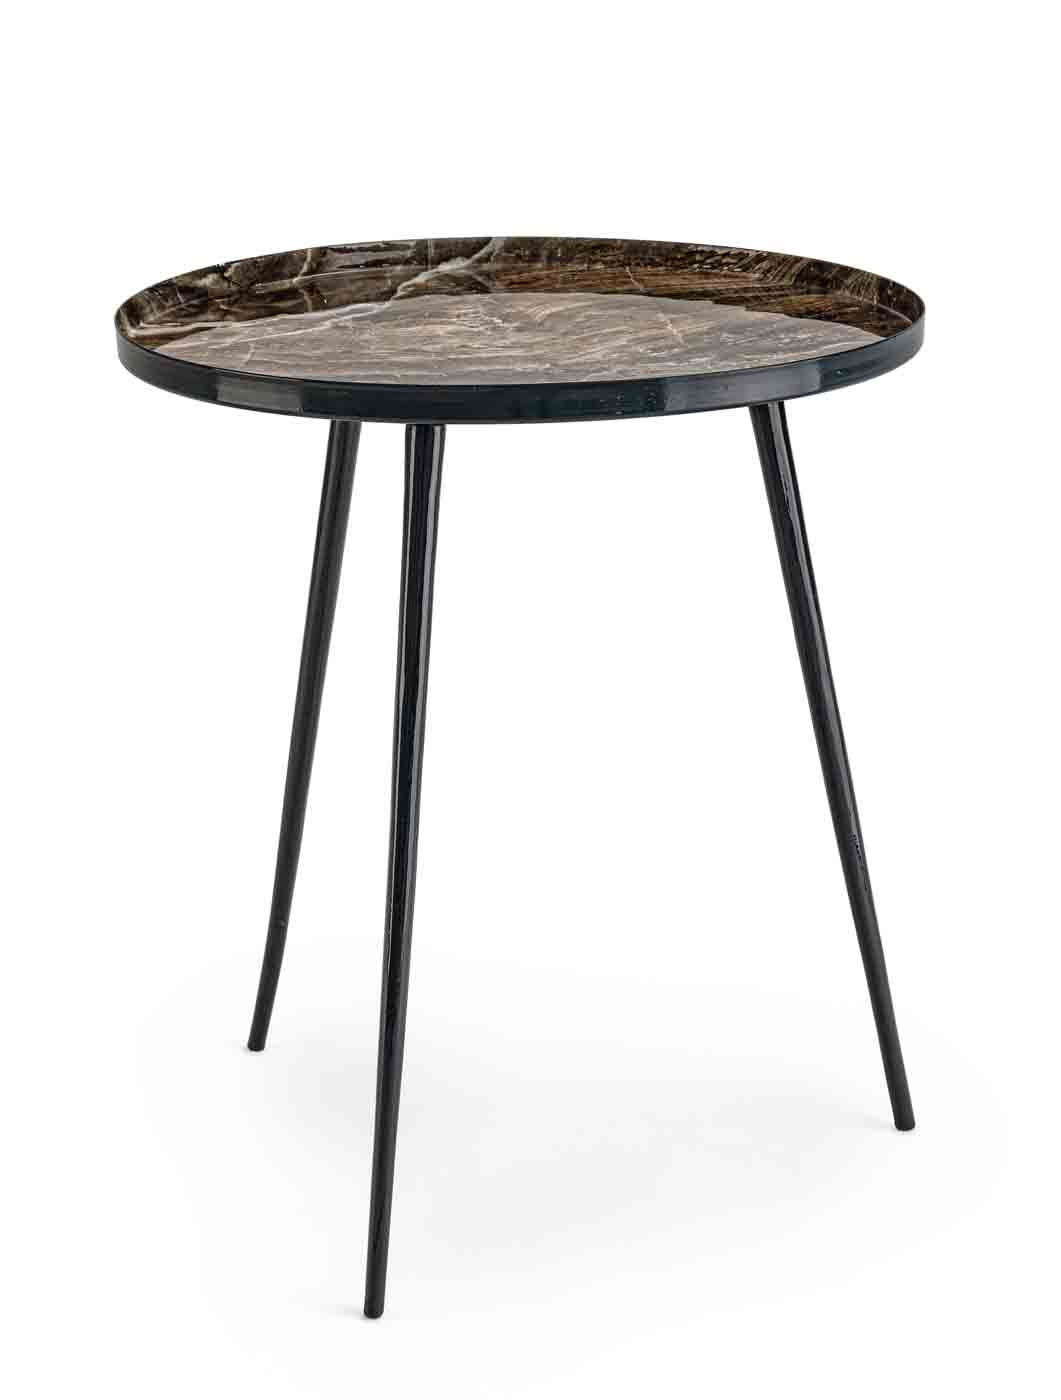 Beistelltisch Kirti in einem modernen Design. Gefertigt aus schwarz lackiertem Metall. Tischplatte mit einem Muster. Marke Bizotto.